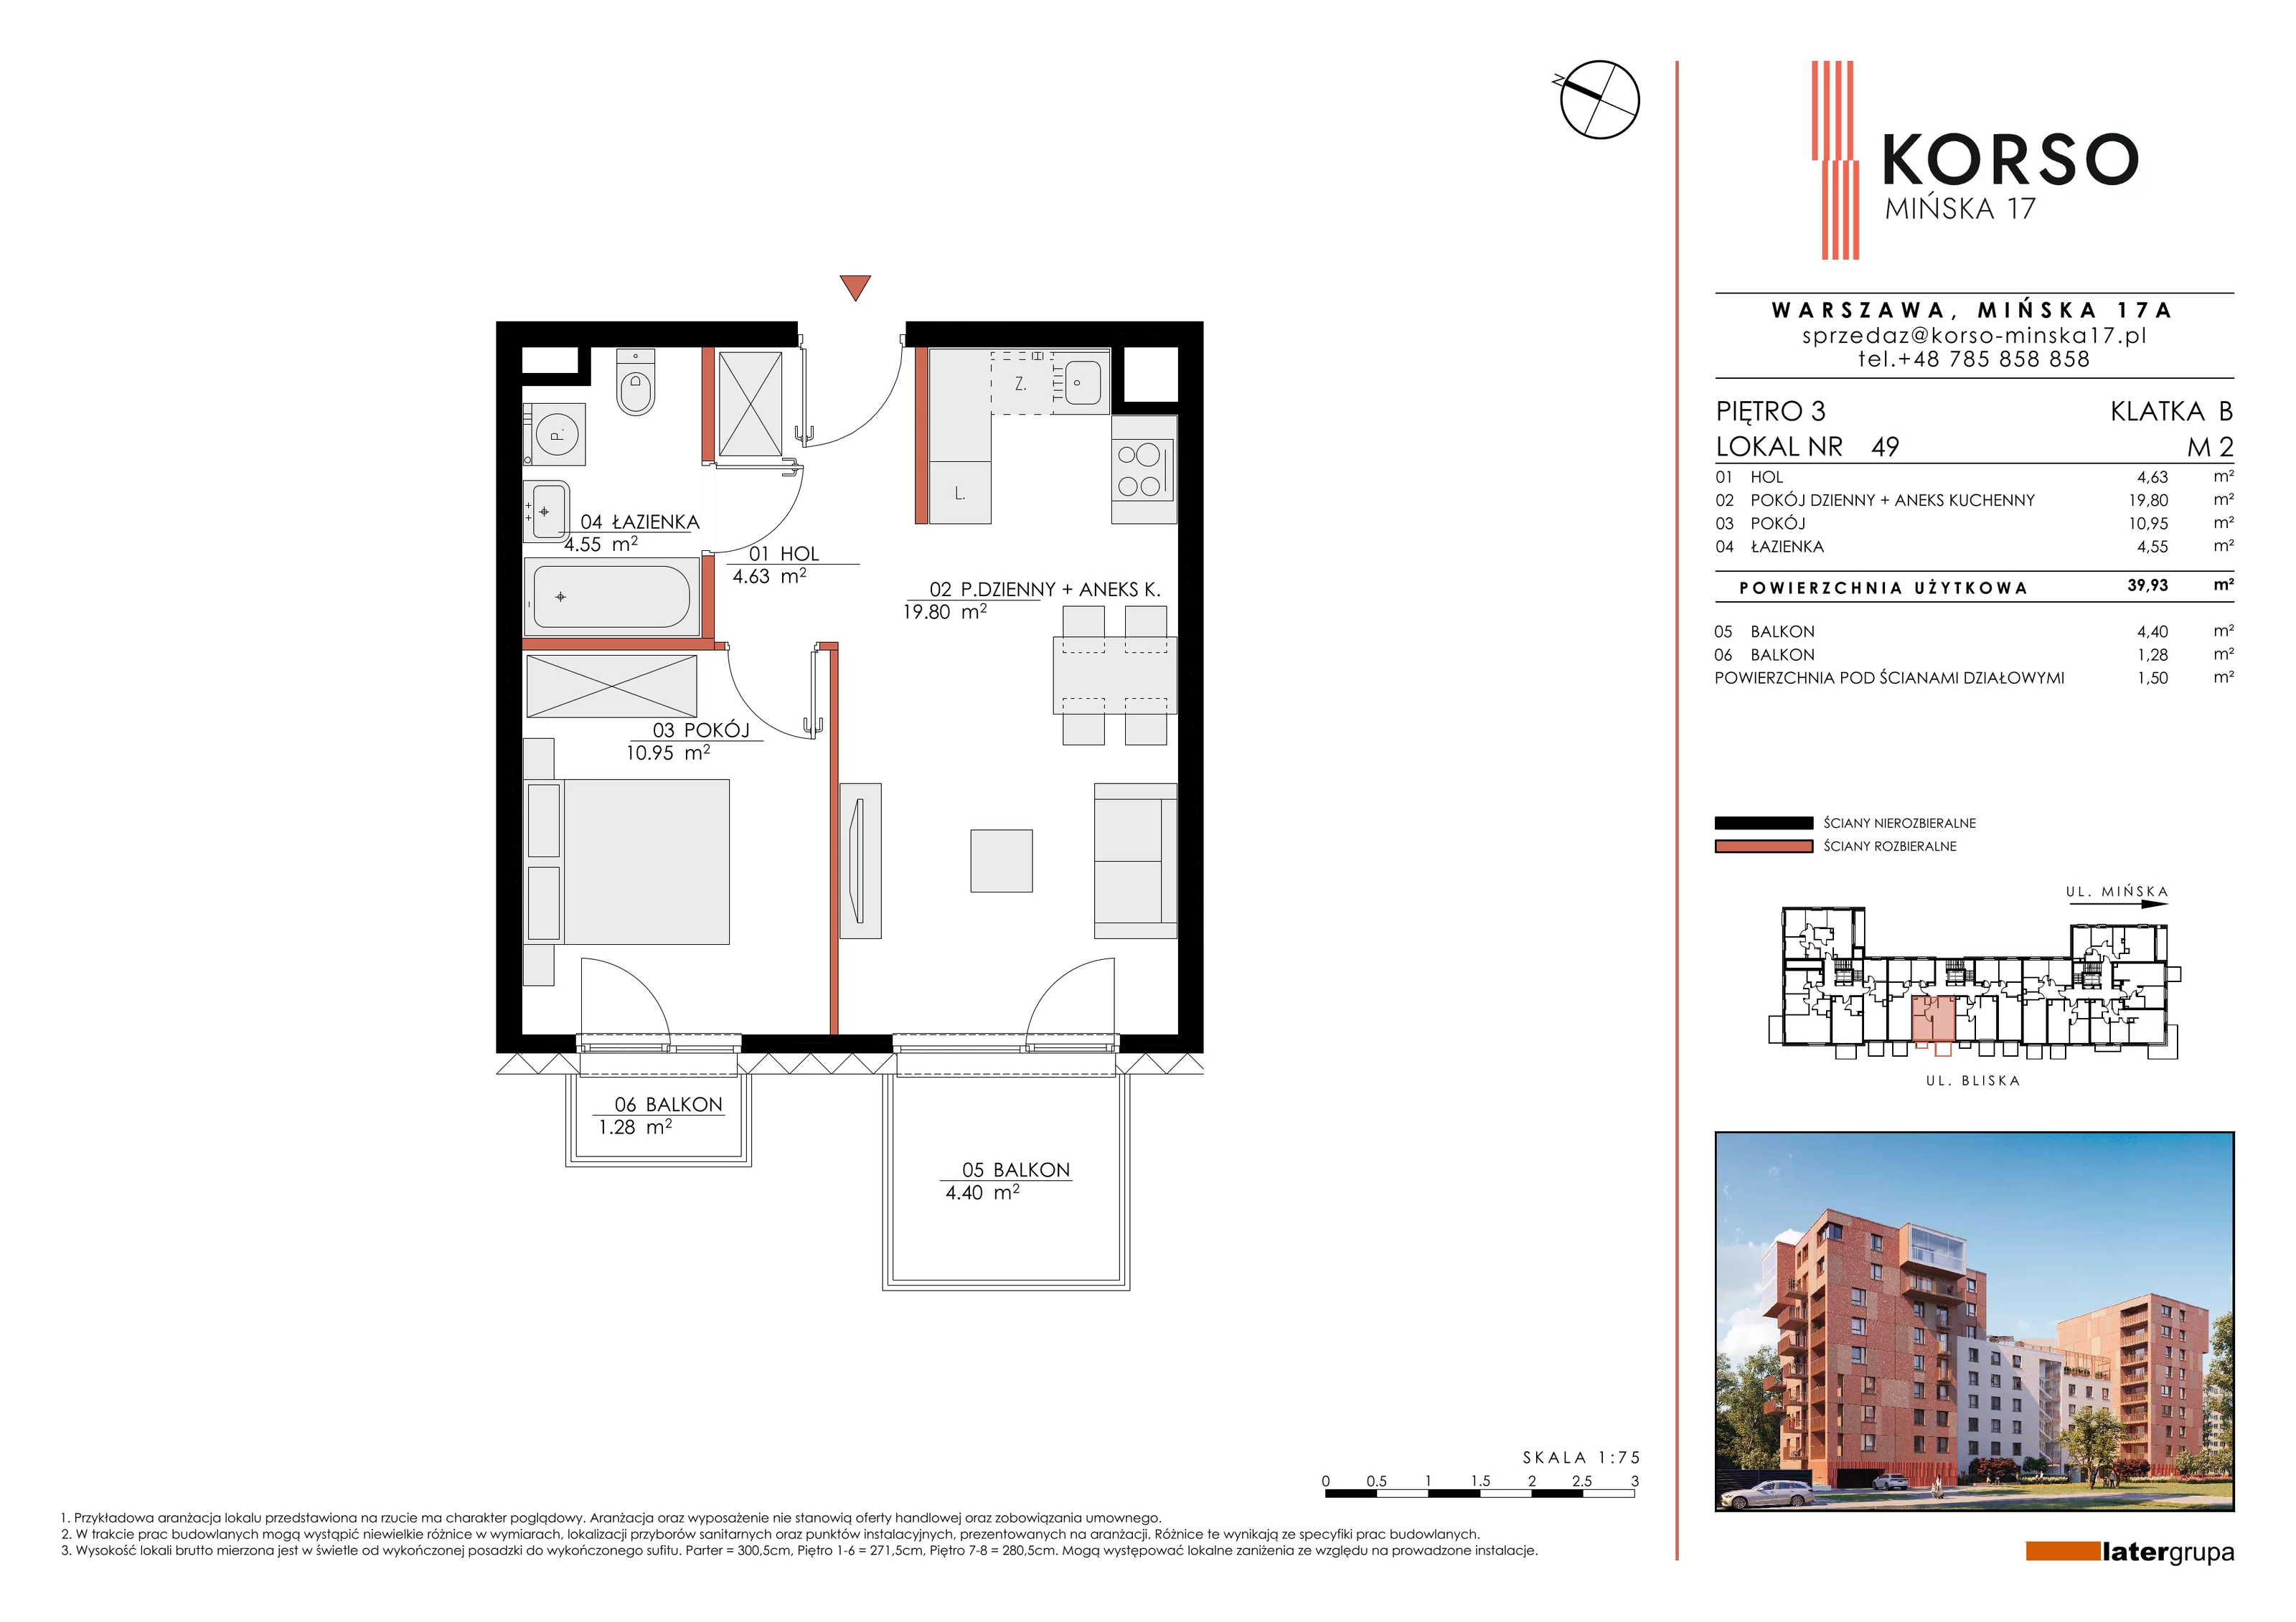 Mieszkanie 39,93 m², piętro 3, oferta nr 49, KORSO Mińska 17, Warszawa, Praga Południe, Kamionek, ul. Mińska 17